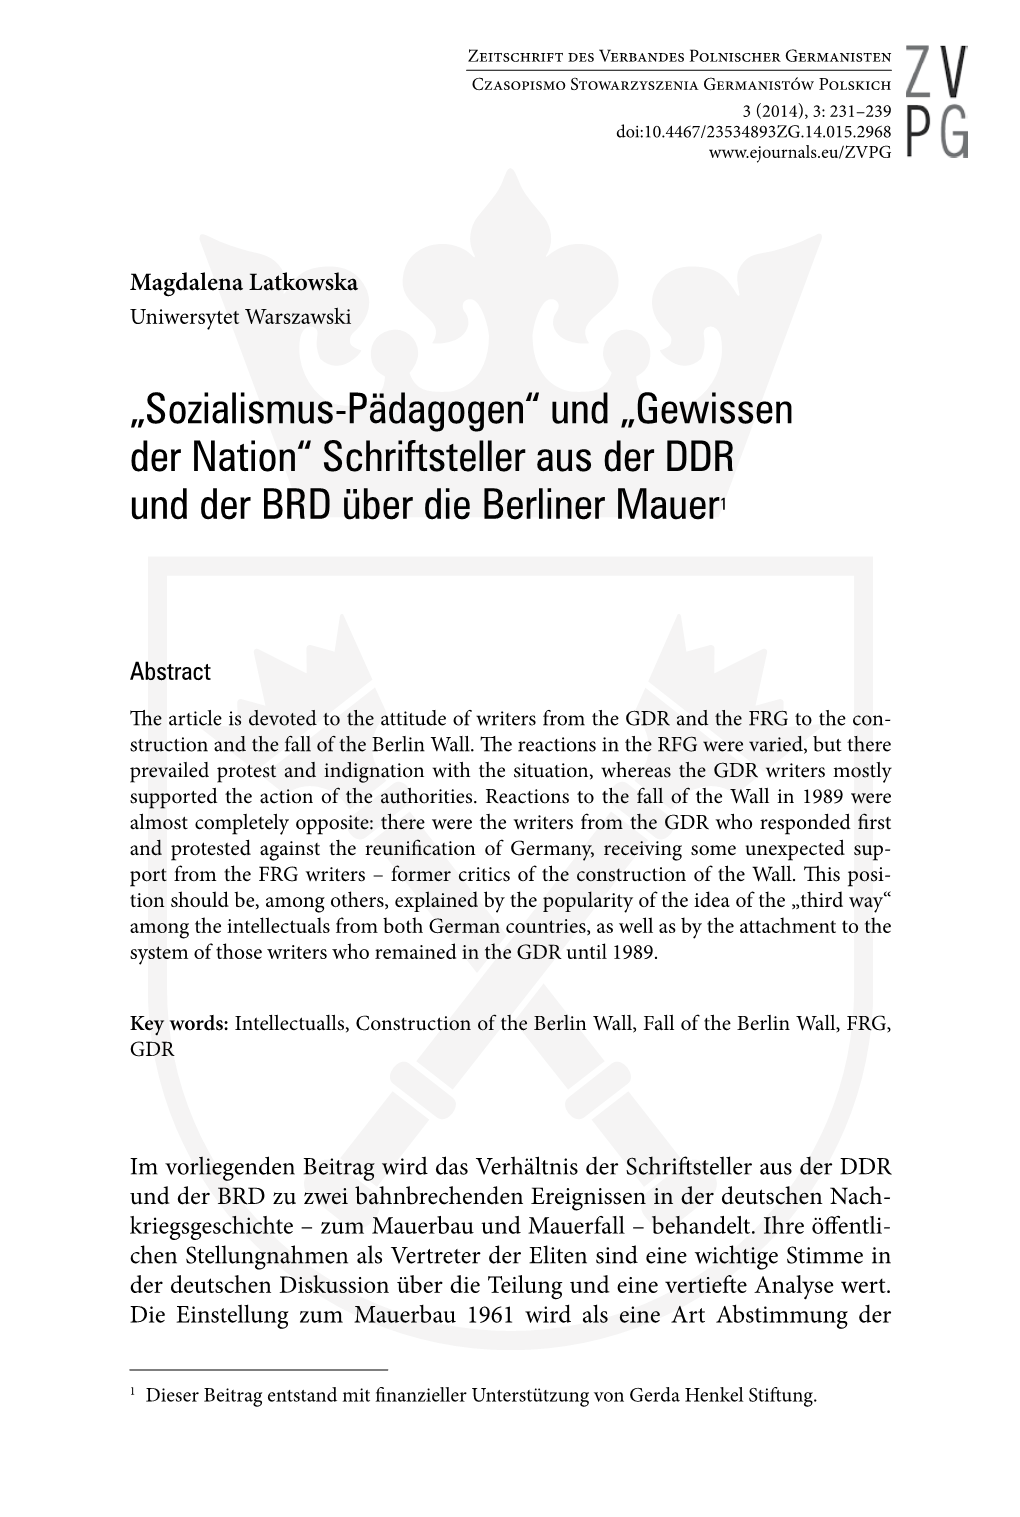 „Sozialismus-Pädagogen“ Und „Gewissen Der Nation“ Schriftsteller Aus Der DDR Und Der BRD Über Die Berliner Mauer1